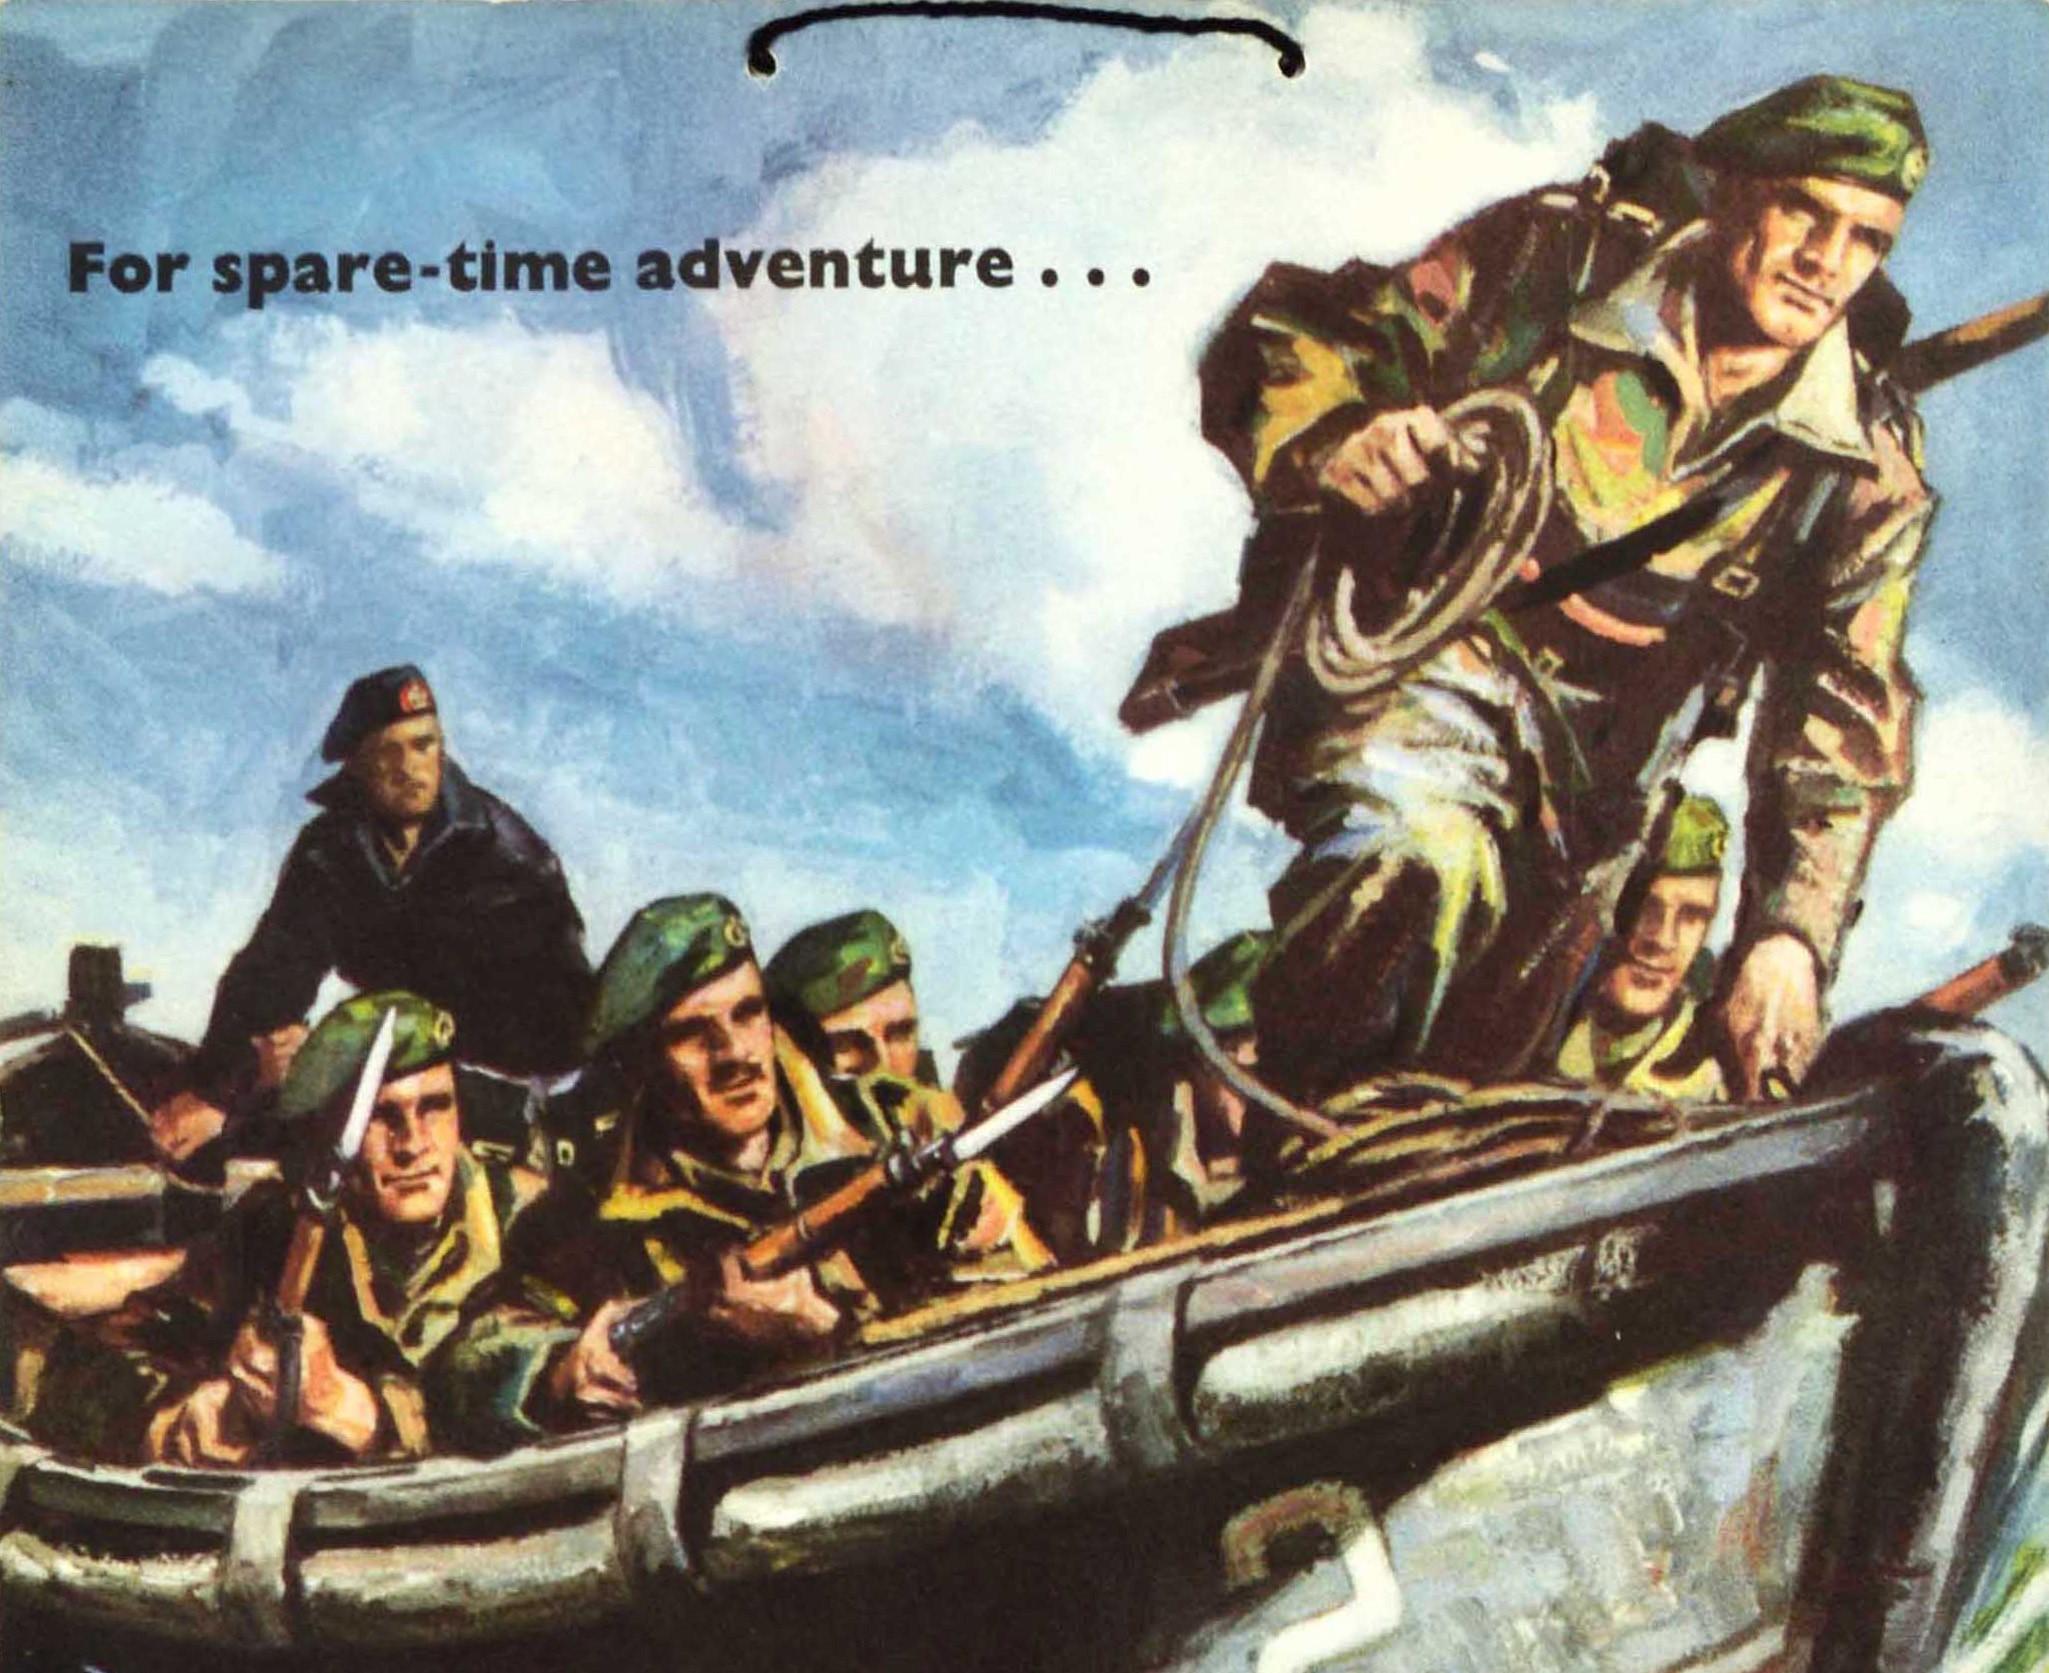 Affiche de recrutement vintage originale - Pour l'aventure du temps libre... Royal Marines Forces Volunteer Reserve - avec une illustration dynamique représentant des soldats en uniforme militaire armés de fusils à baïonnette dans un bateau rapide